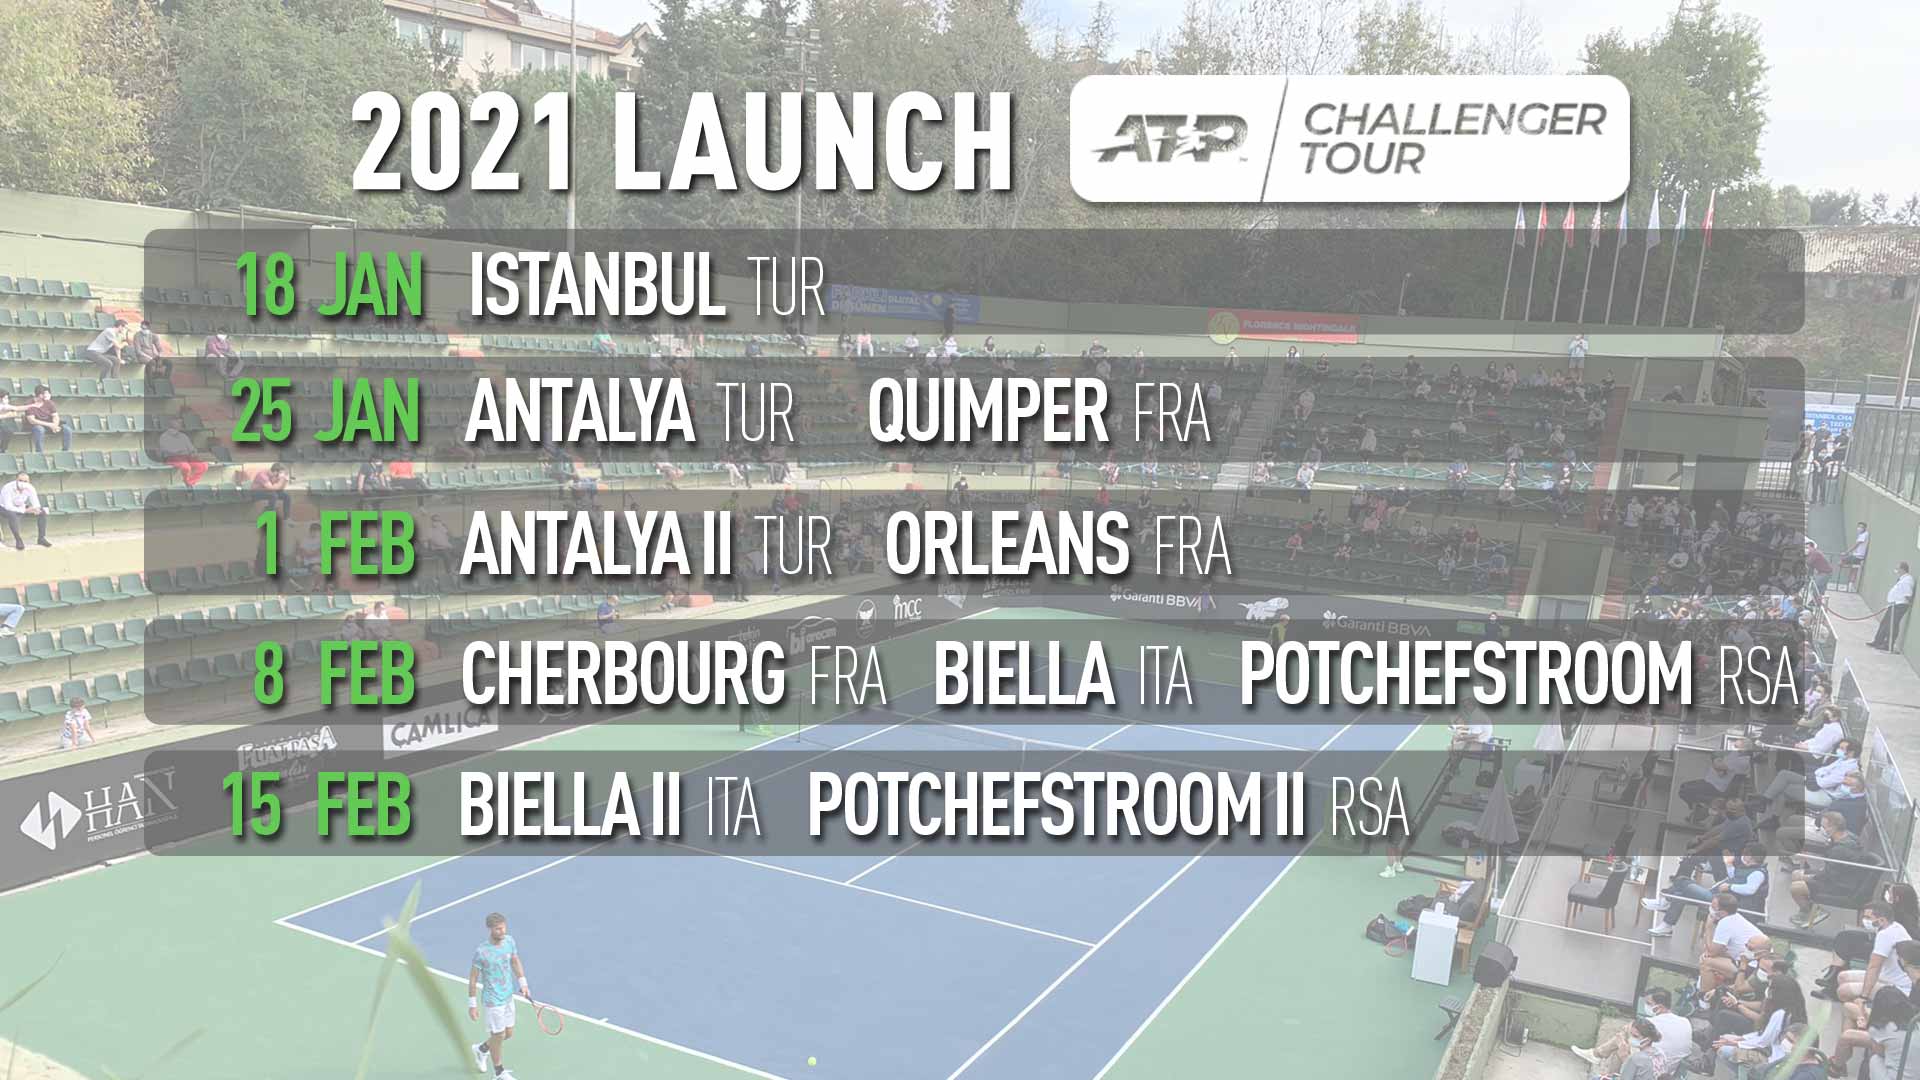 Challenger Tennis Calendar. Календарь ATP 2021. Antalya ATP 2021. Challenger Tennis Calendar 2022.